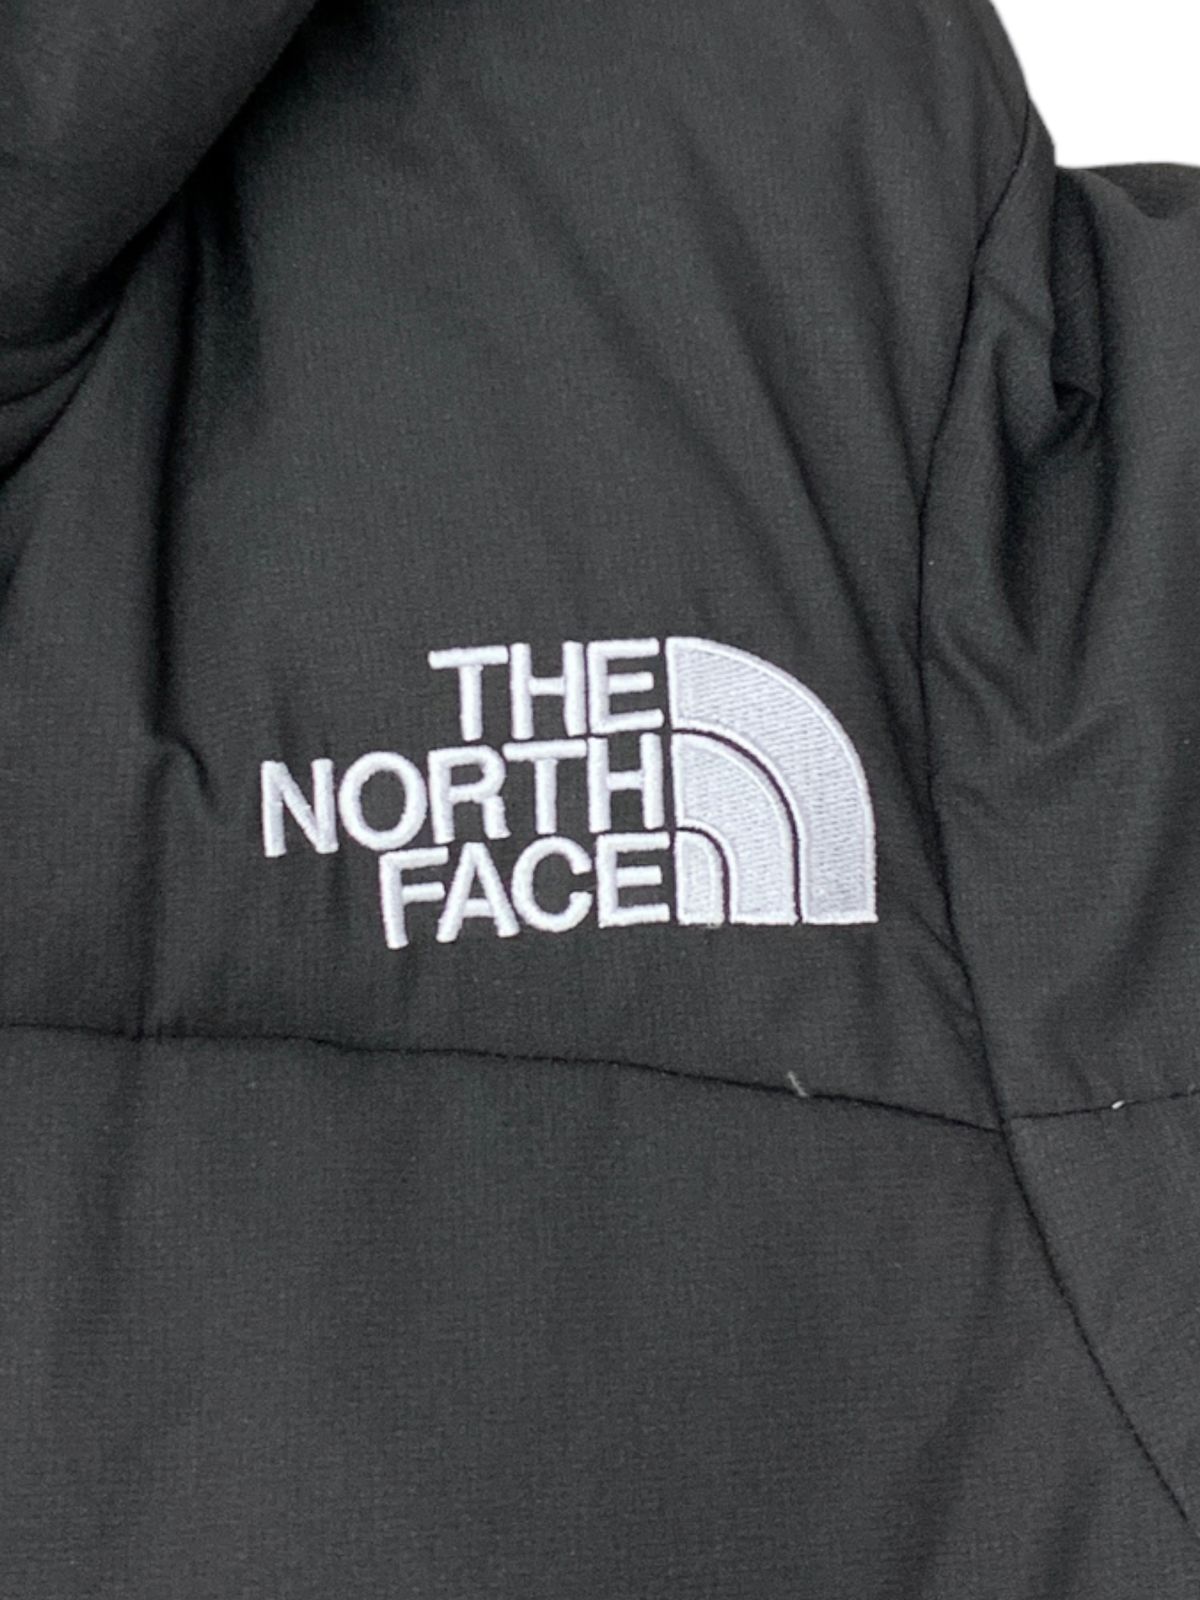 THE NORTH FACE (ザノースフェイス) Baltro Light Jacket バルトロライトジャケット ND91950 XL ブラック  メンズ/025 - メルカリ